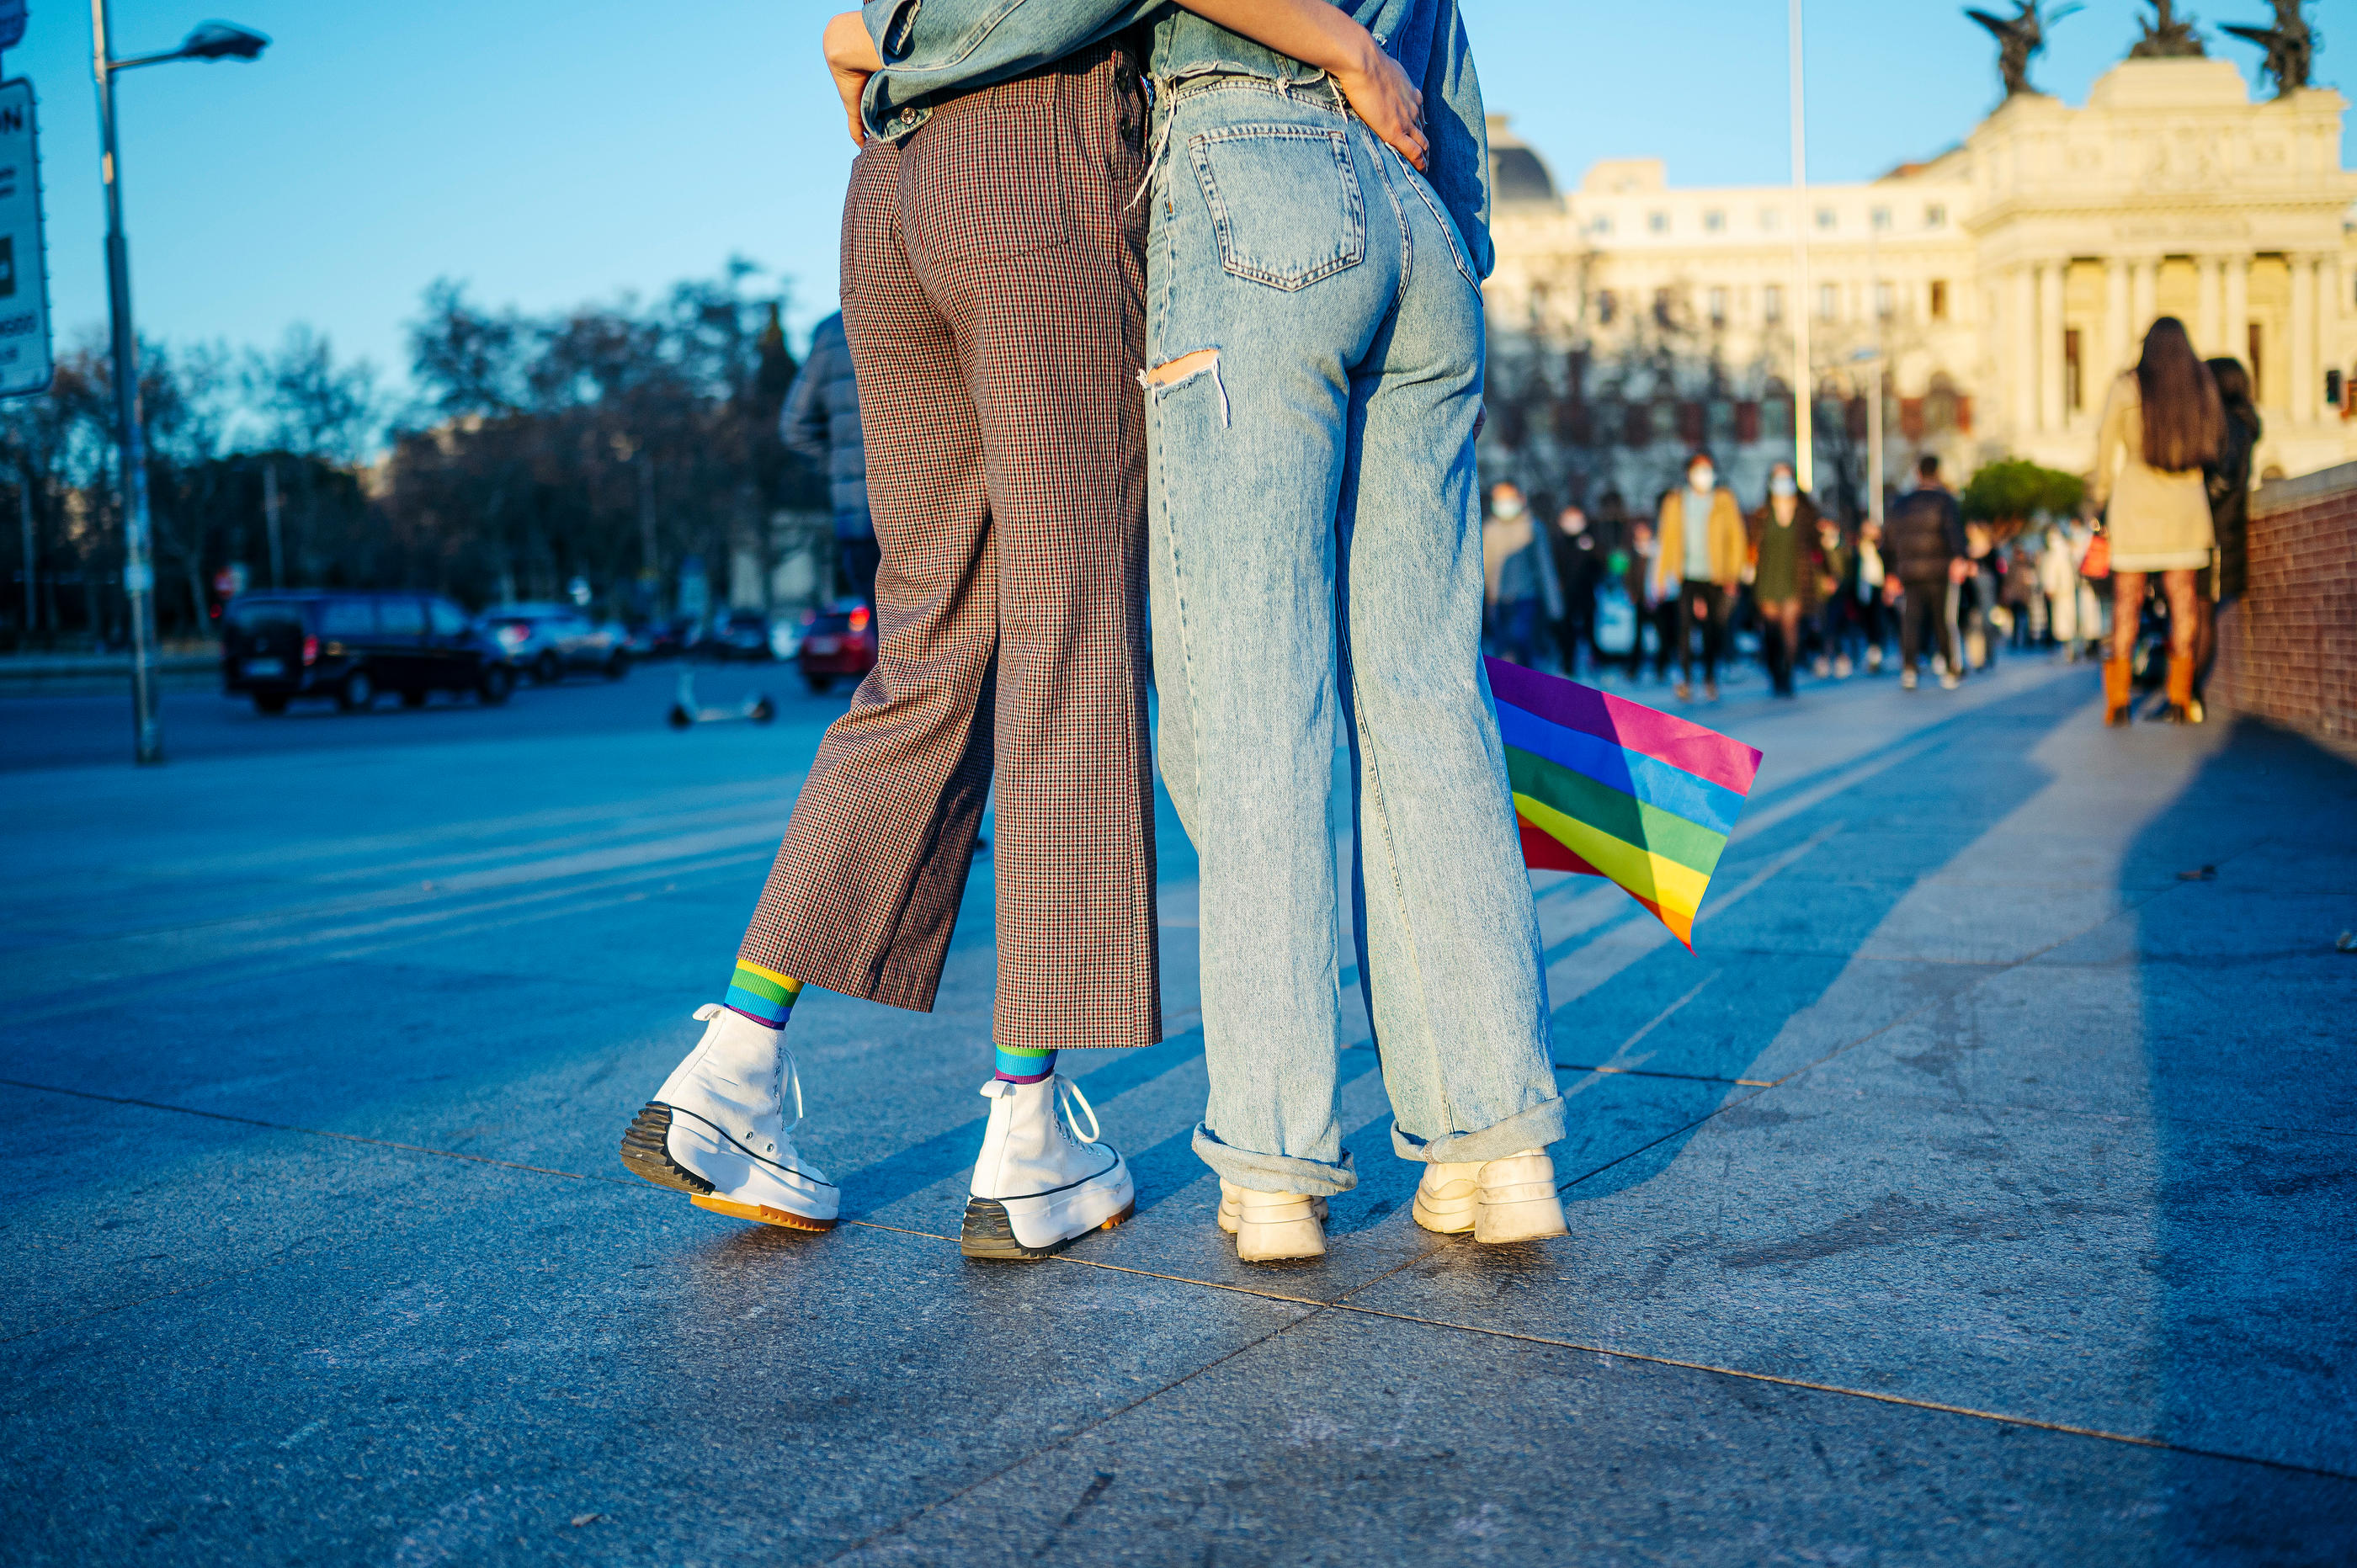 Les jeunes Américains sont de plus en plus nombreux à s'identifier comme  LGBT